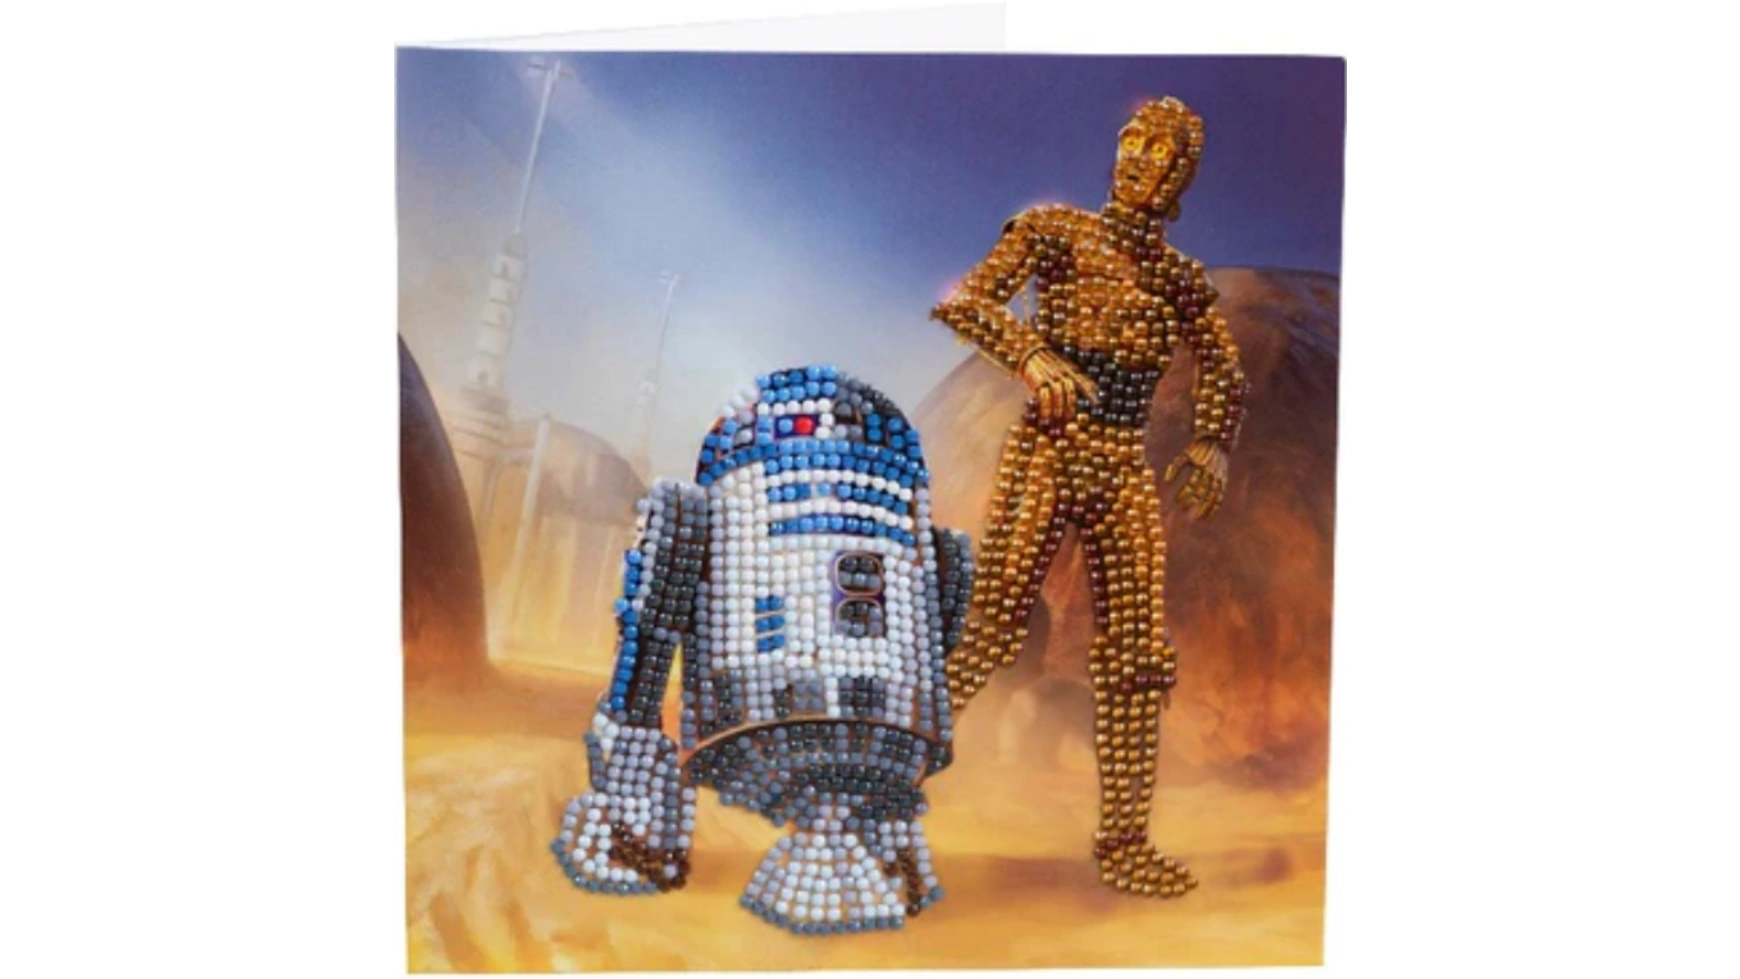 Craft Buddy Crystal Art Алмазная картина R2-D2 и C-3PO 18x18см Кристаллическая художественная открытка набор креативного тв ва crystal art павлин